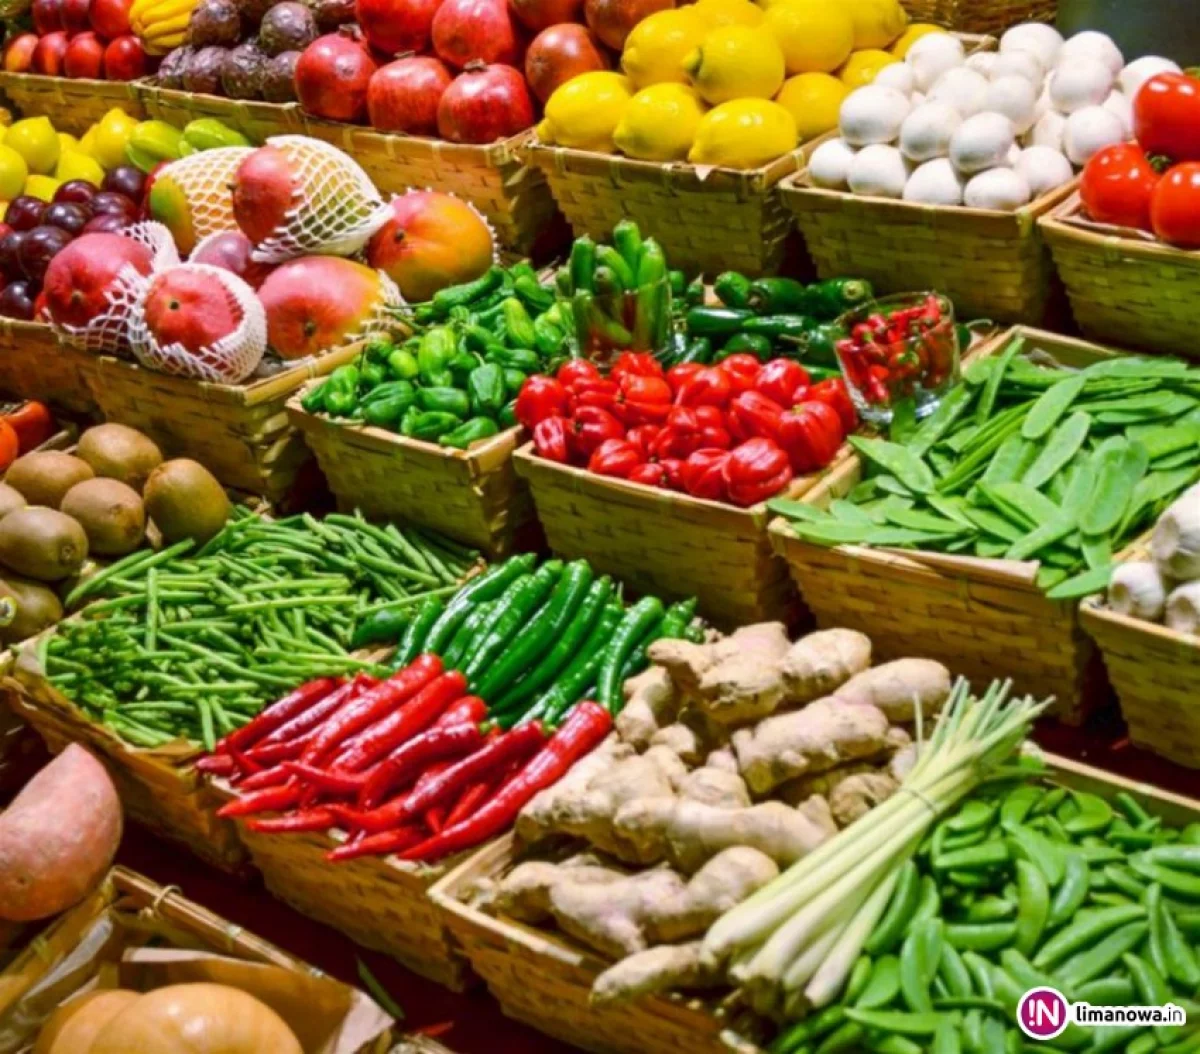 Dietetyk: jedzmy owoce i warzywa; zwłaszcza te o intensywnych barwach